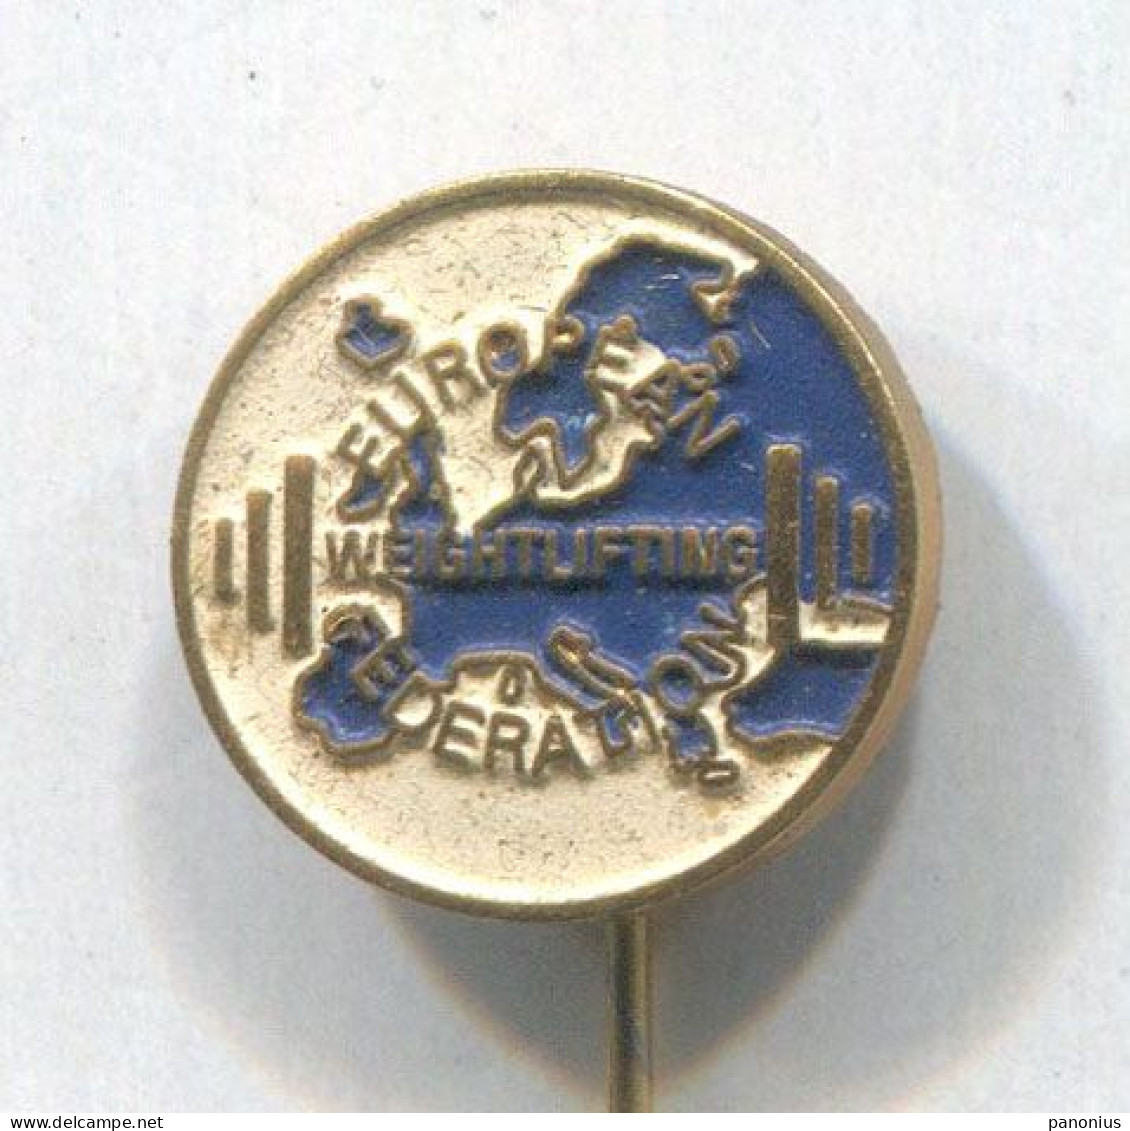 Weightlifting Gewichtheben - European Federation Association, Vintage Pin, Badge, Abzeichen - Pesistica